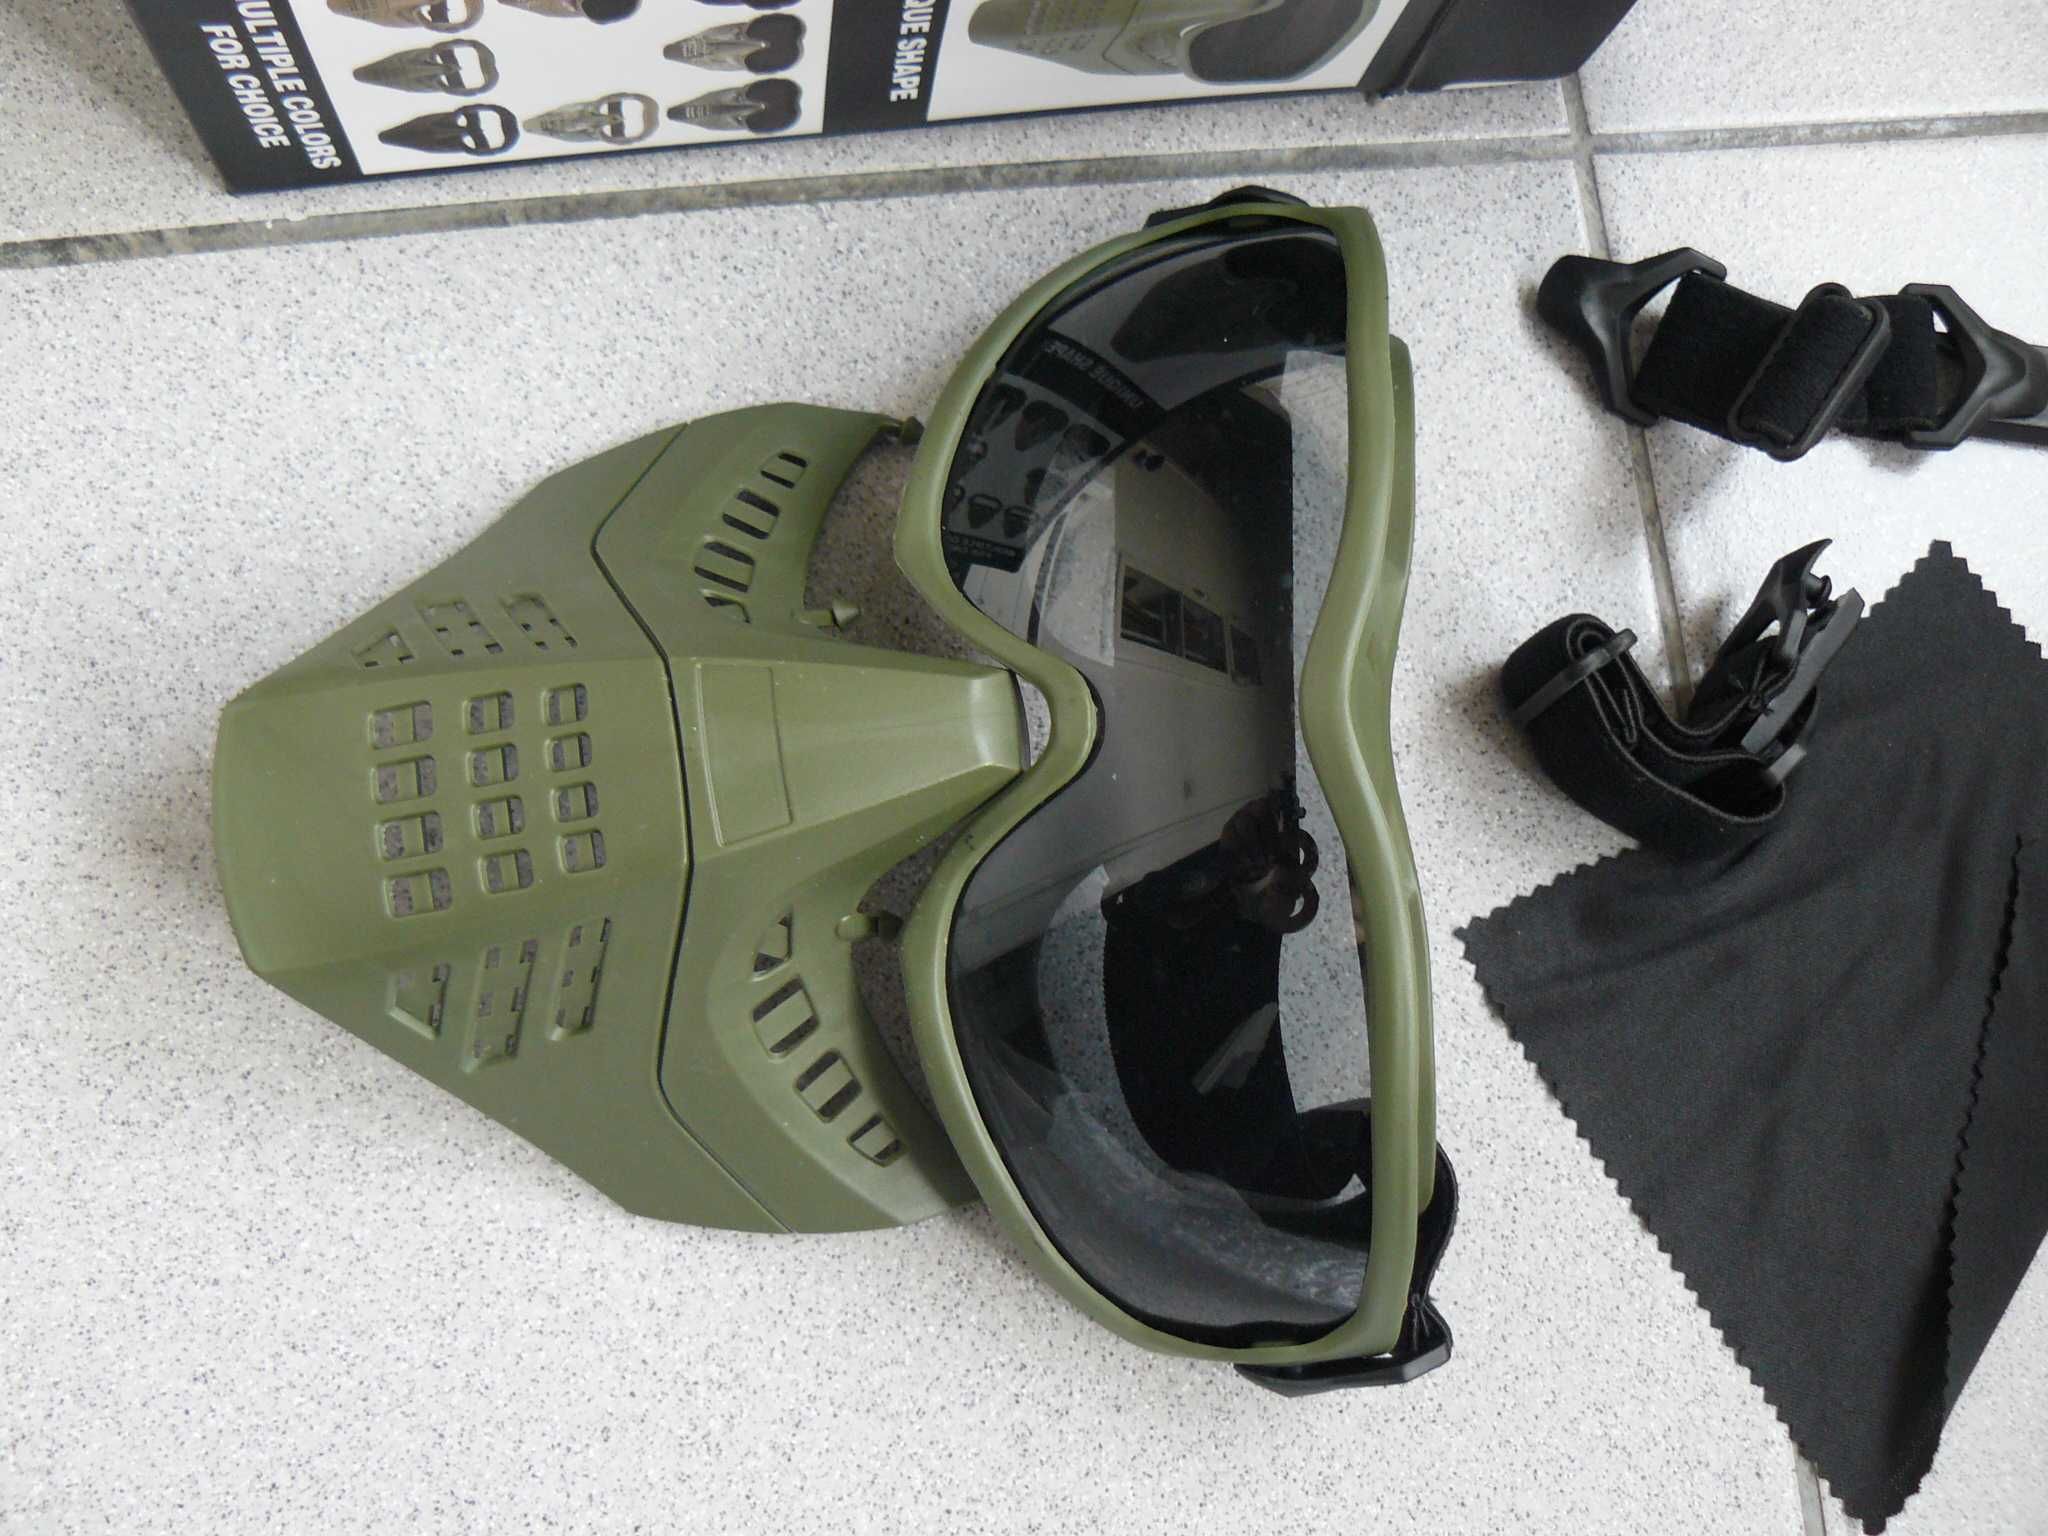 Mască Airsoft ANT Cu Ochelari De Protecție Ultimate Tactical OLIVE